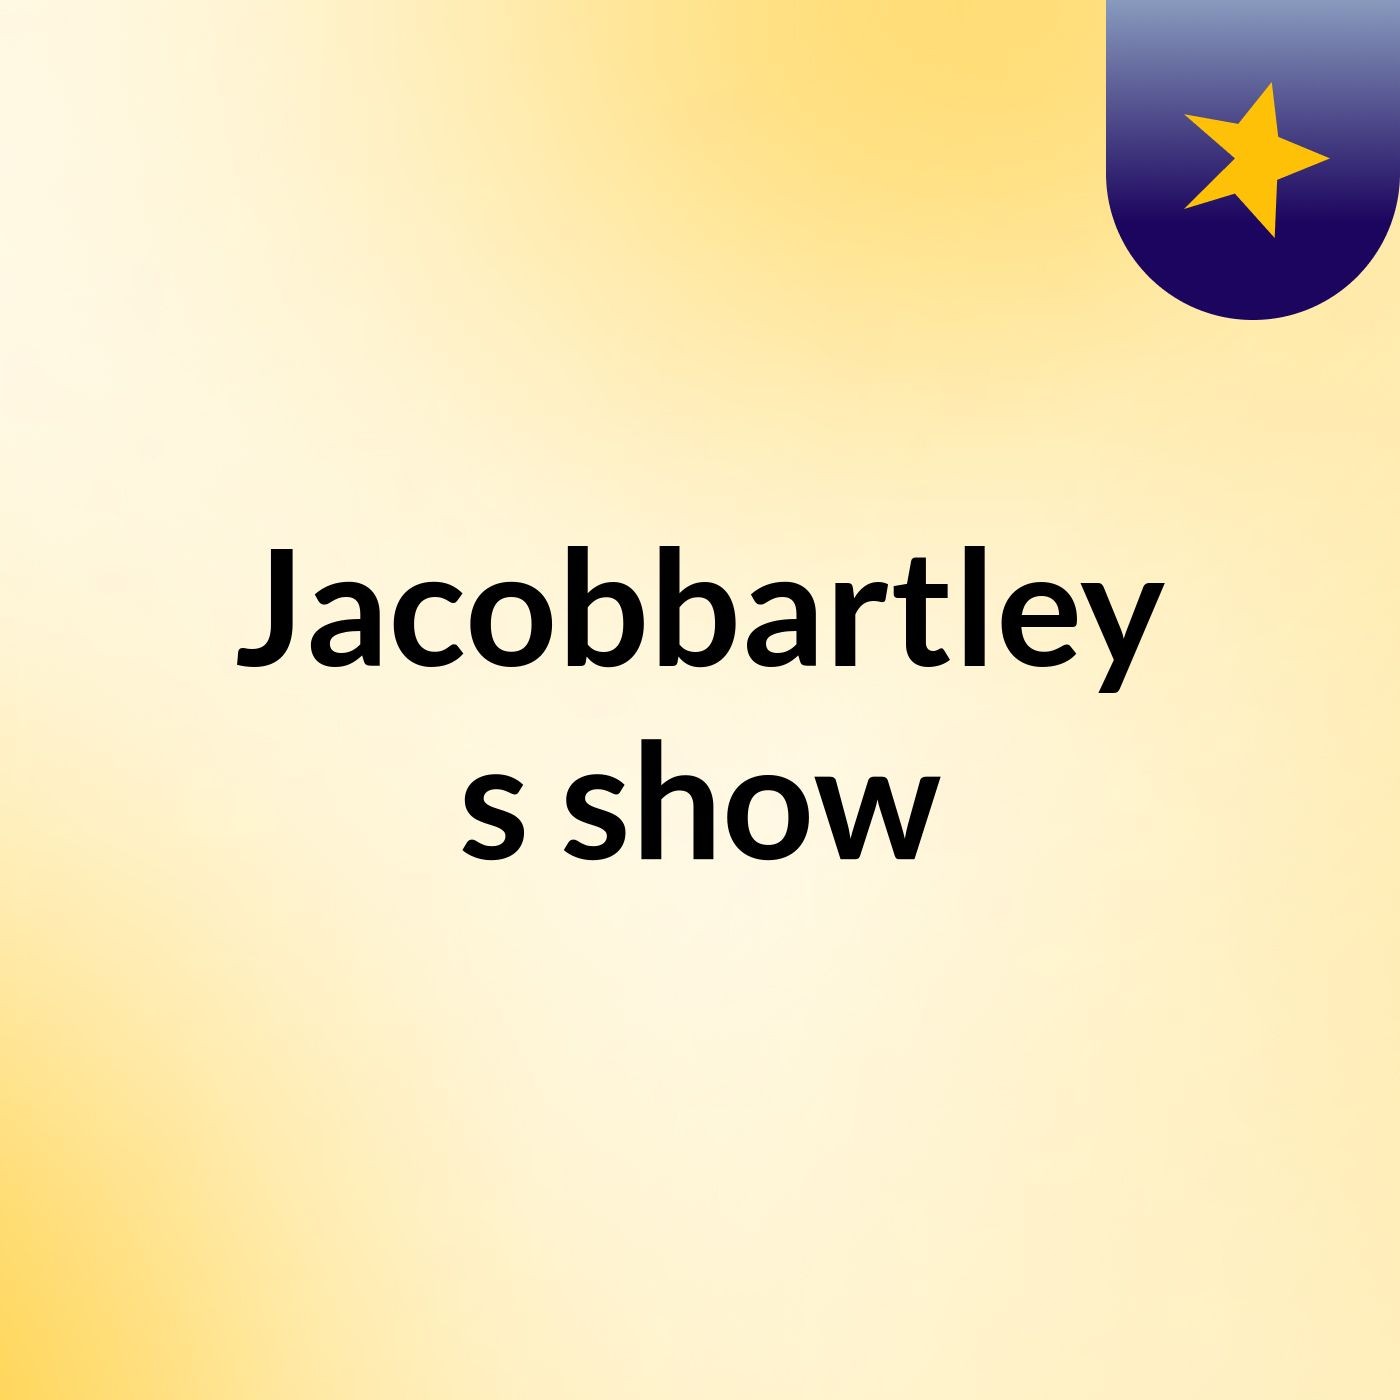 Episode 20 - Jacobbartley's show